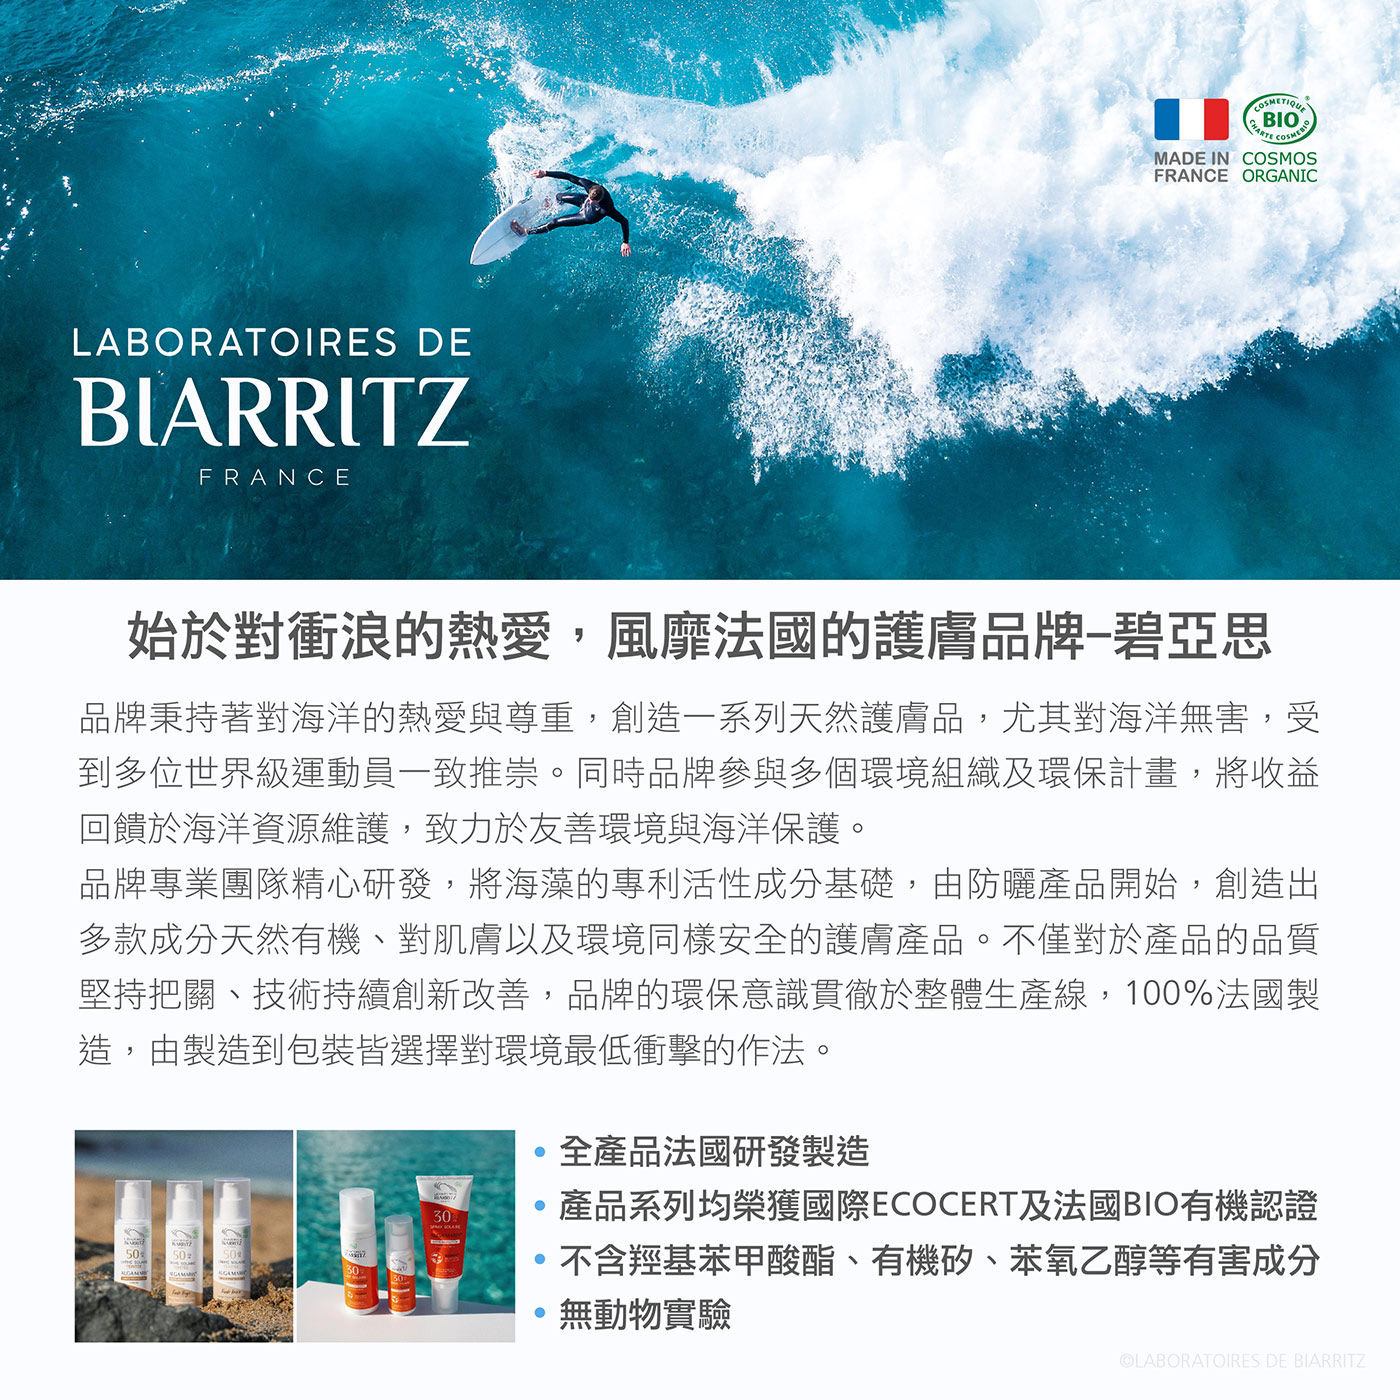 Laboratoires de Biarritz 寶寶專用防曬霜 SPF50始於對衝浪的熱愛風靡法國的護膚品牌碧雅斯秉持著對海洋的熱愛與尊重創造一系列天然護膚品